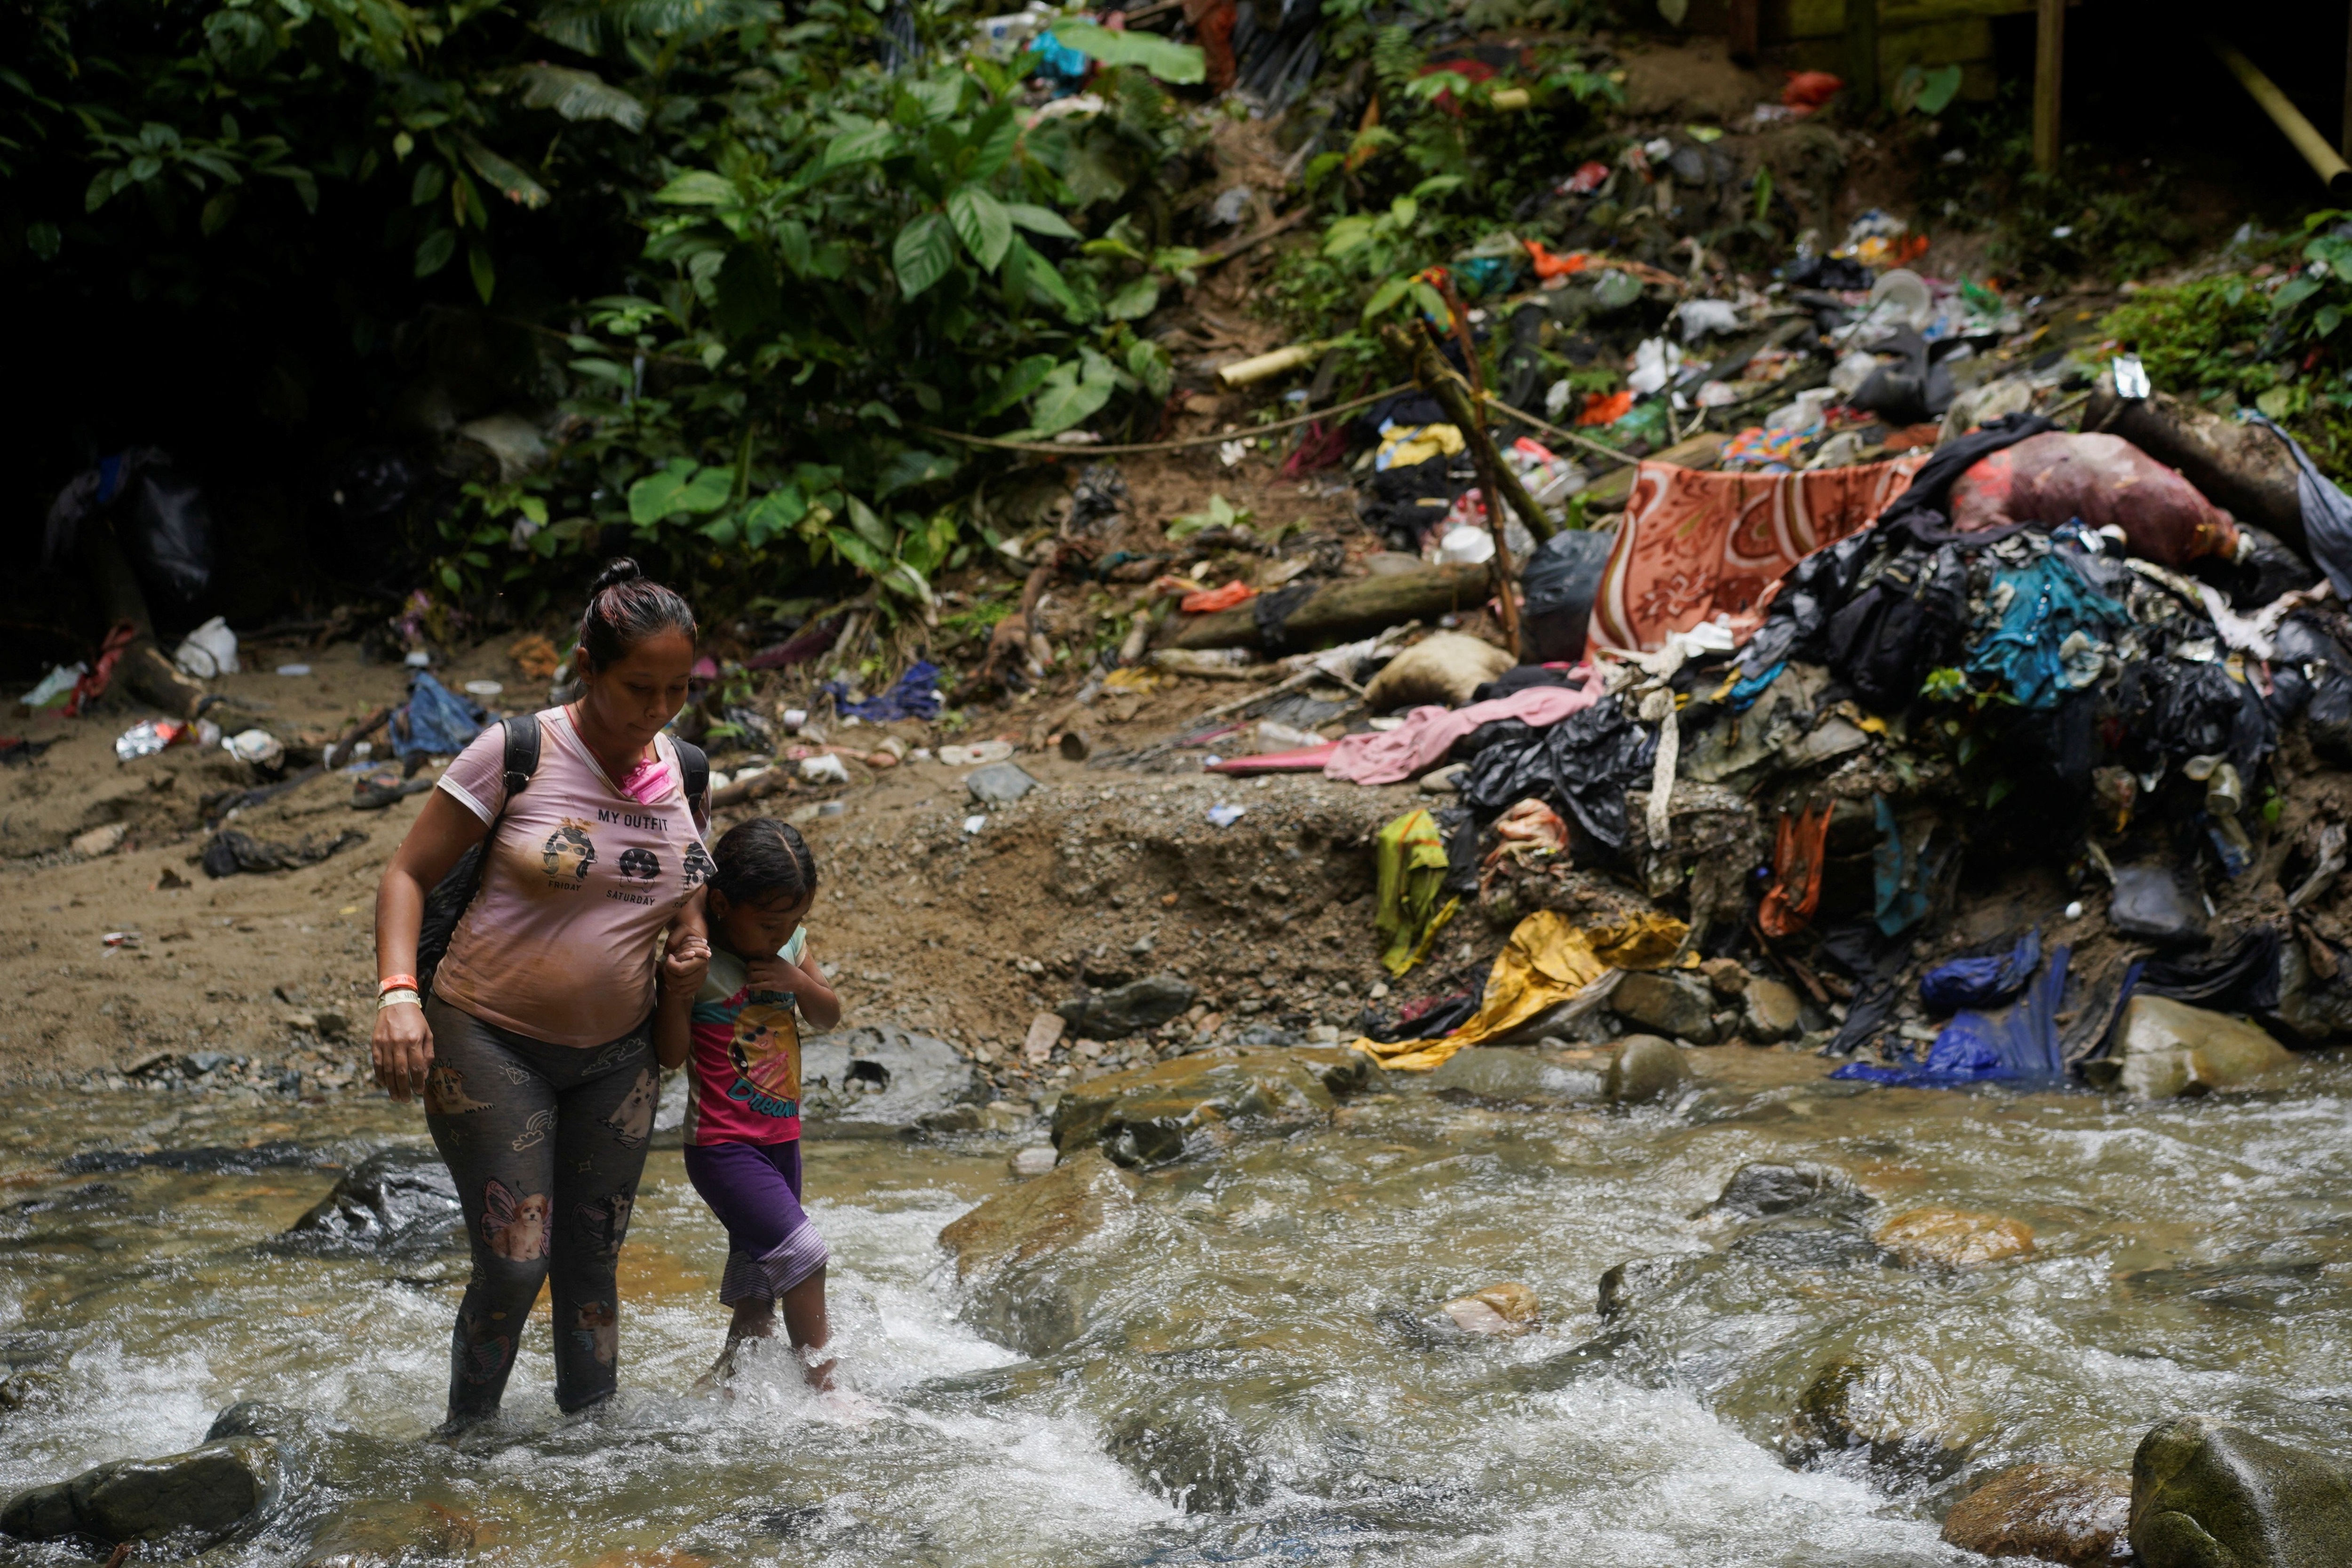 After the Venezuelans, the Ecuadorians are the second group that crosses the most dangerous Darién jungle.  (REUTERS/Adri Salido)